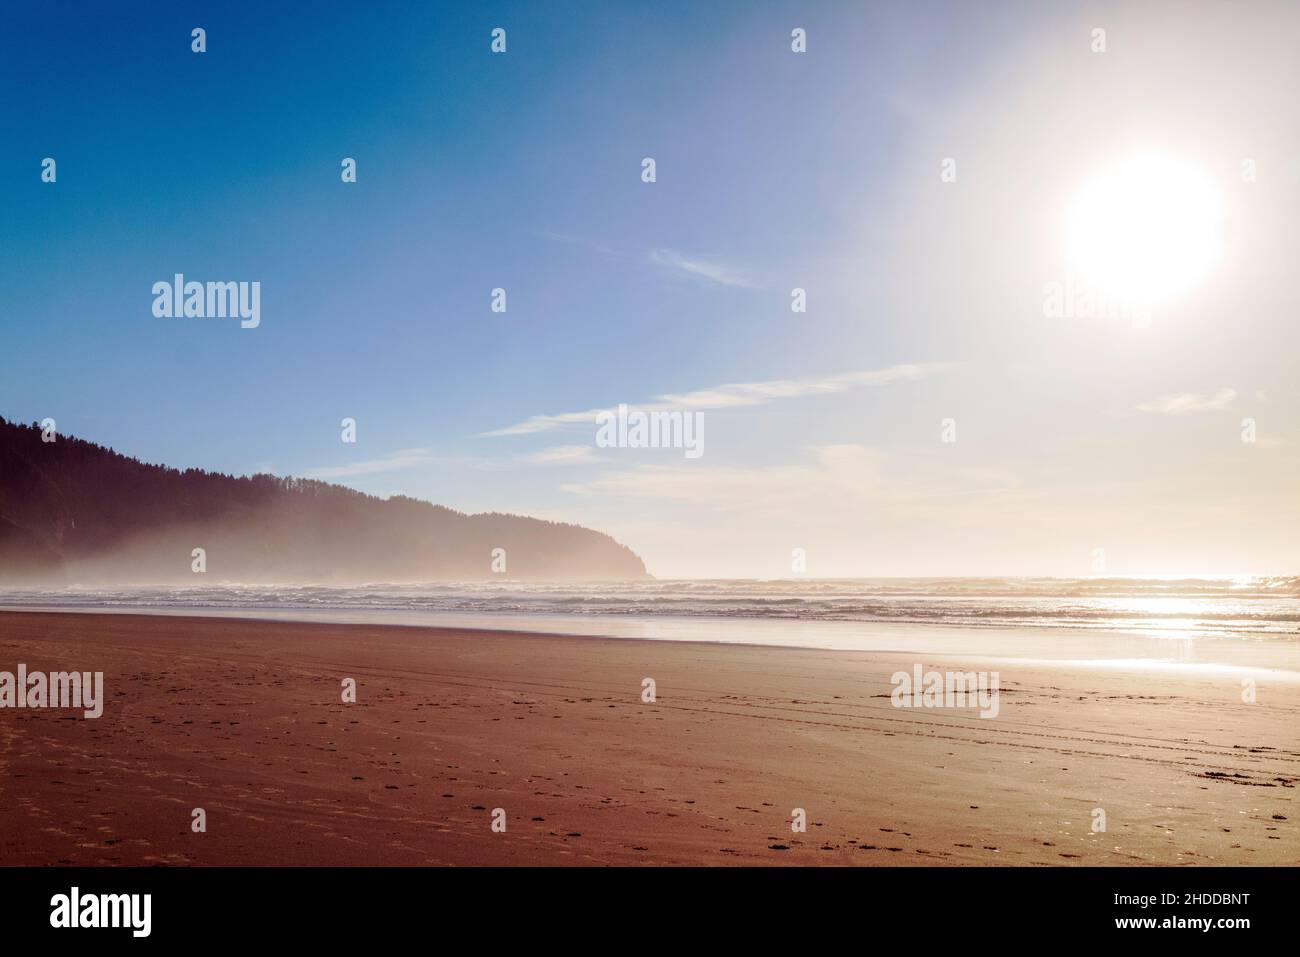 Plage; soleil; brume; parc national de Cape Lookout; océan Pacifique; côte de l'Oregon; près de Tillamook; Oregon;ÉTATS-UNIS Banque D'Images